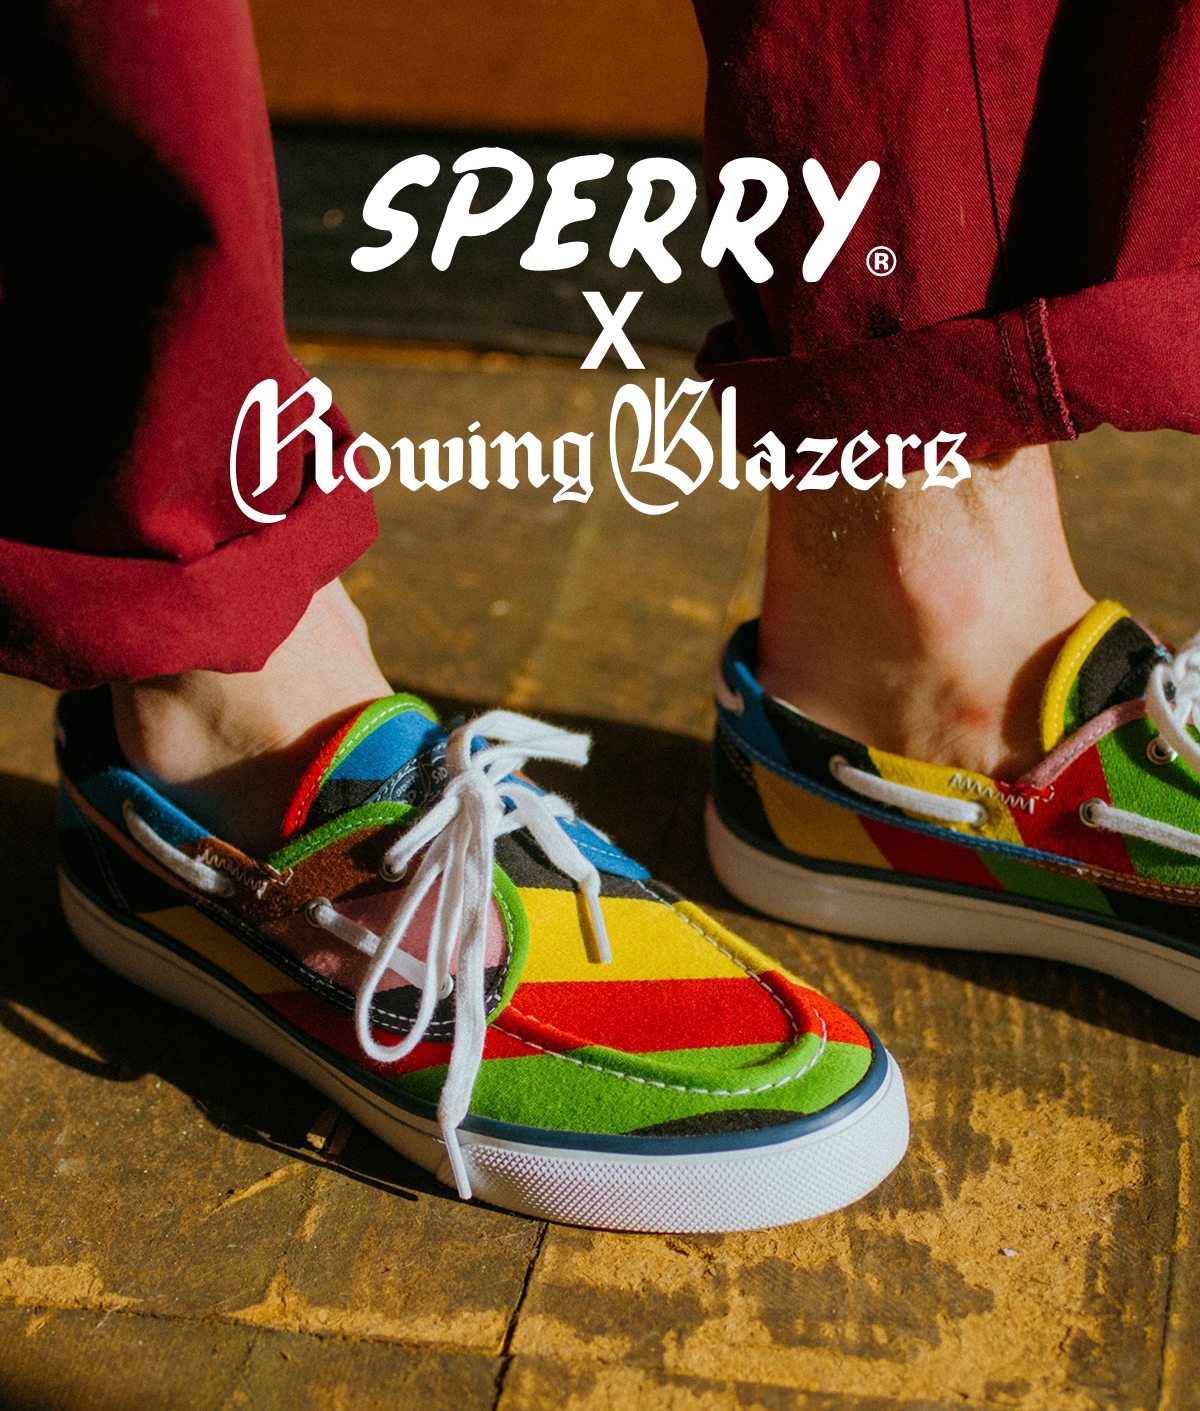 Sperry x Rowing Blazers